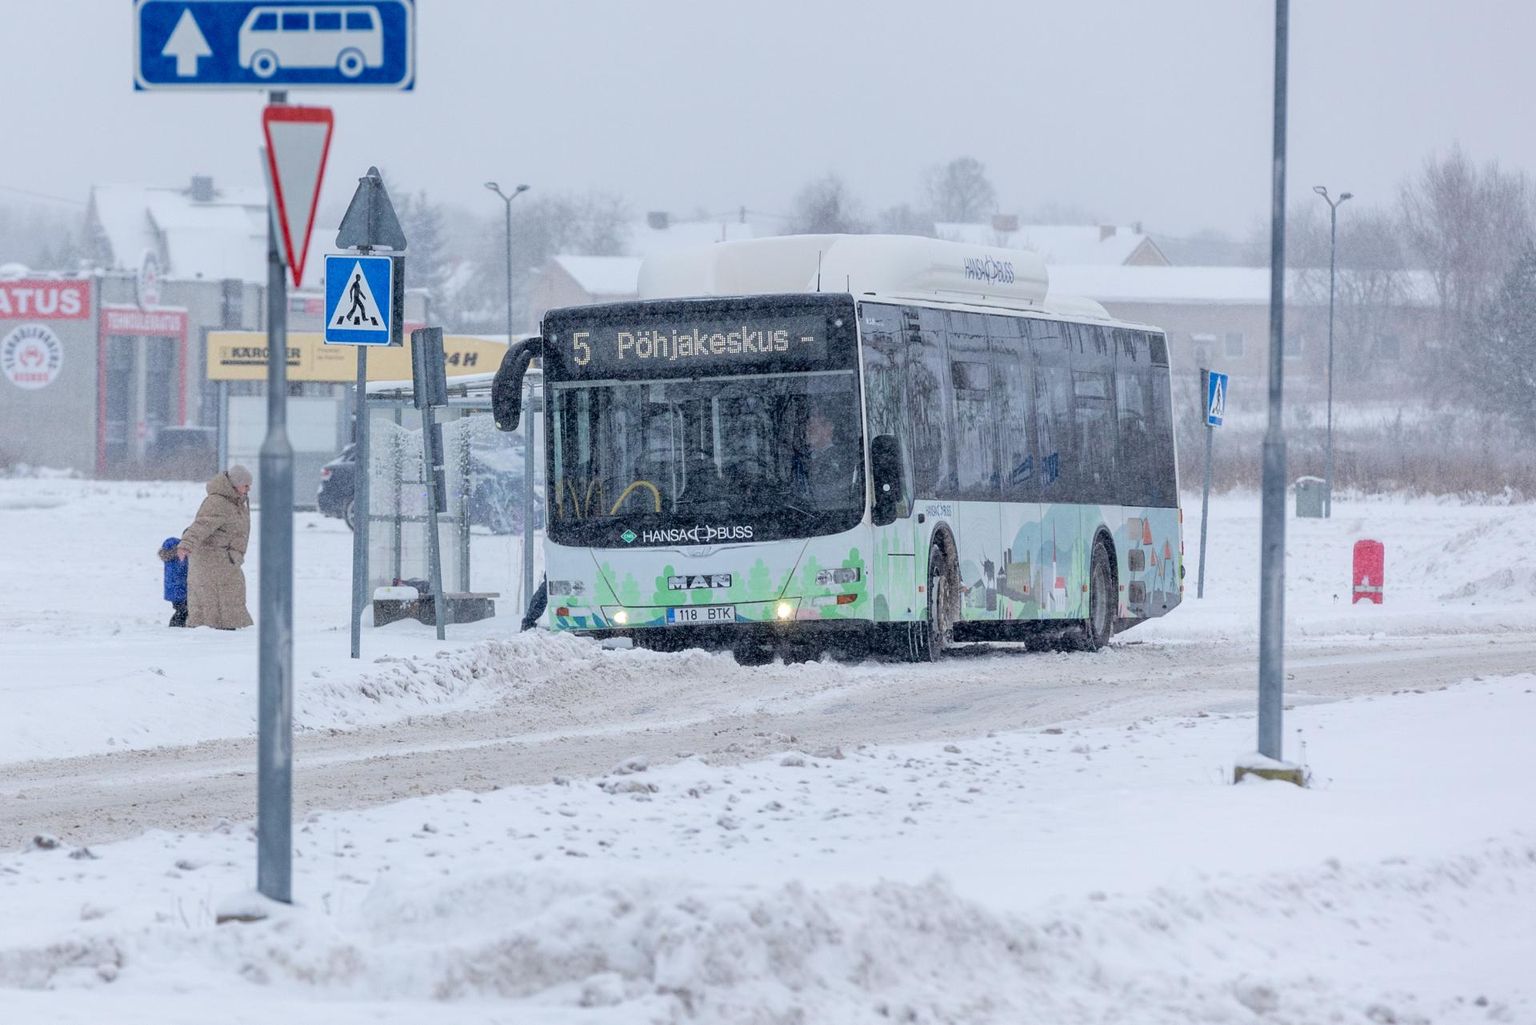 Fotol on Rakvere linnaliini number 5 buss Põhjakeskuse peatuses.